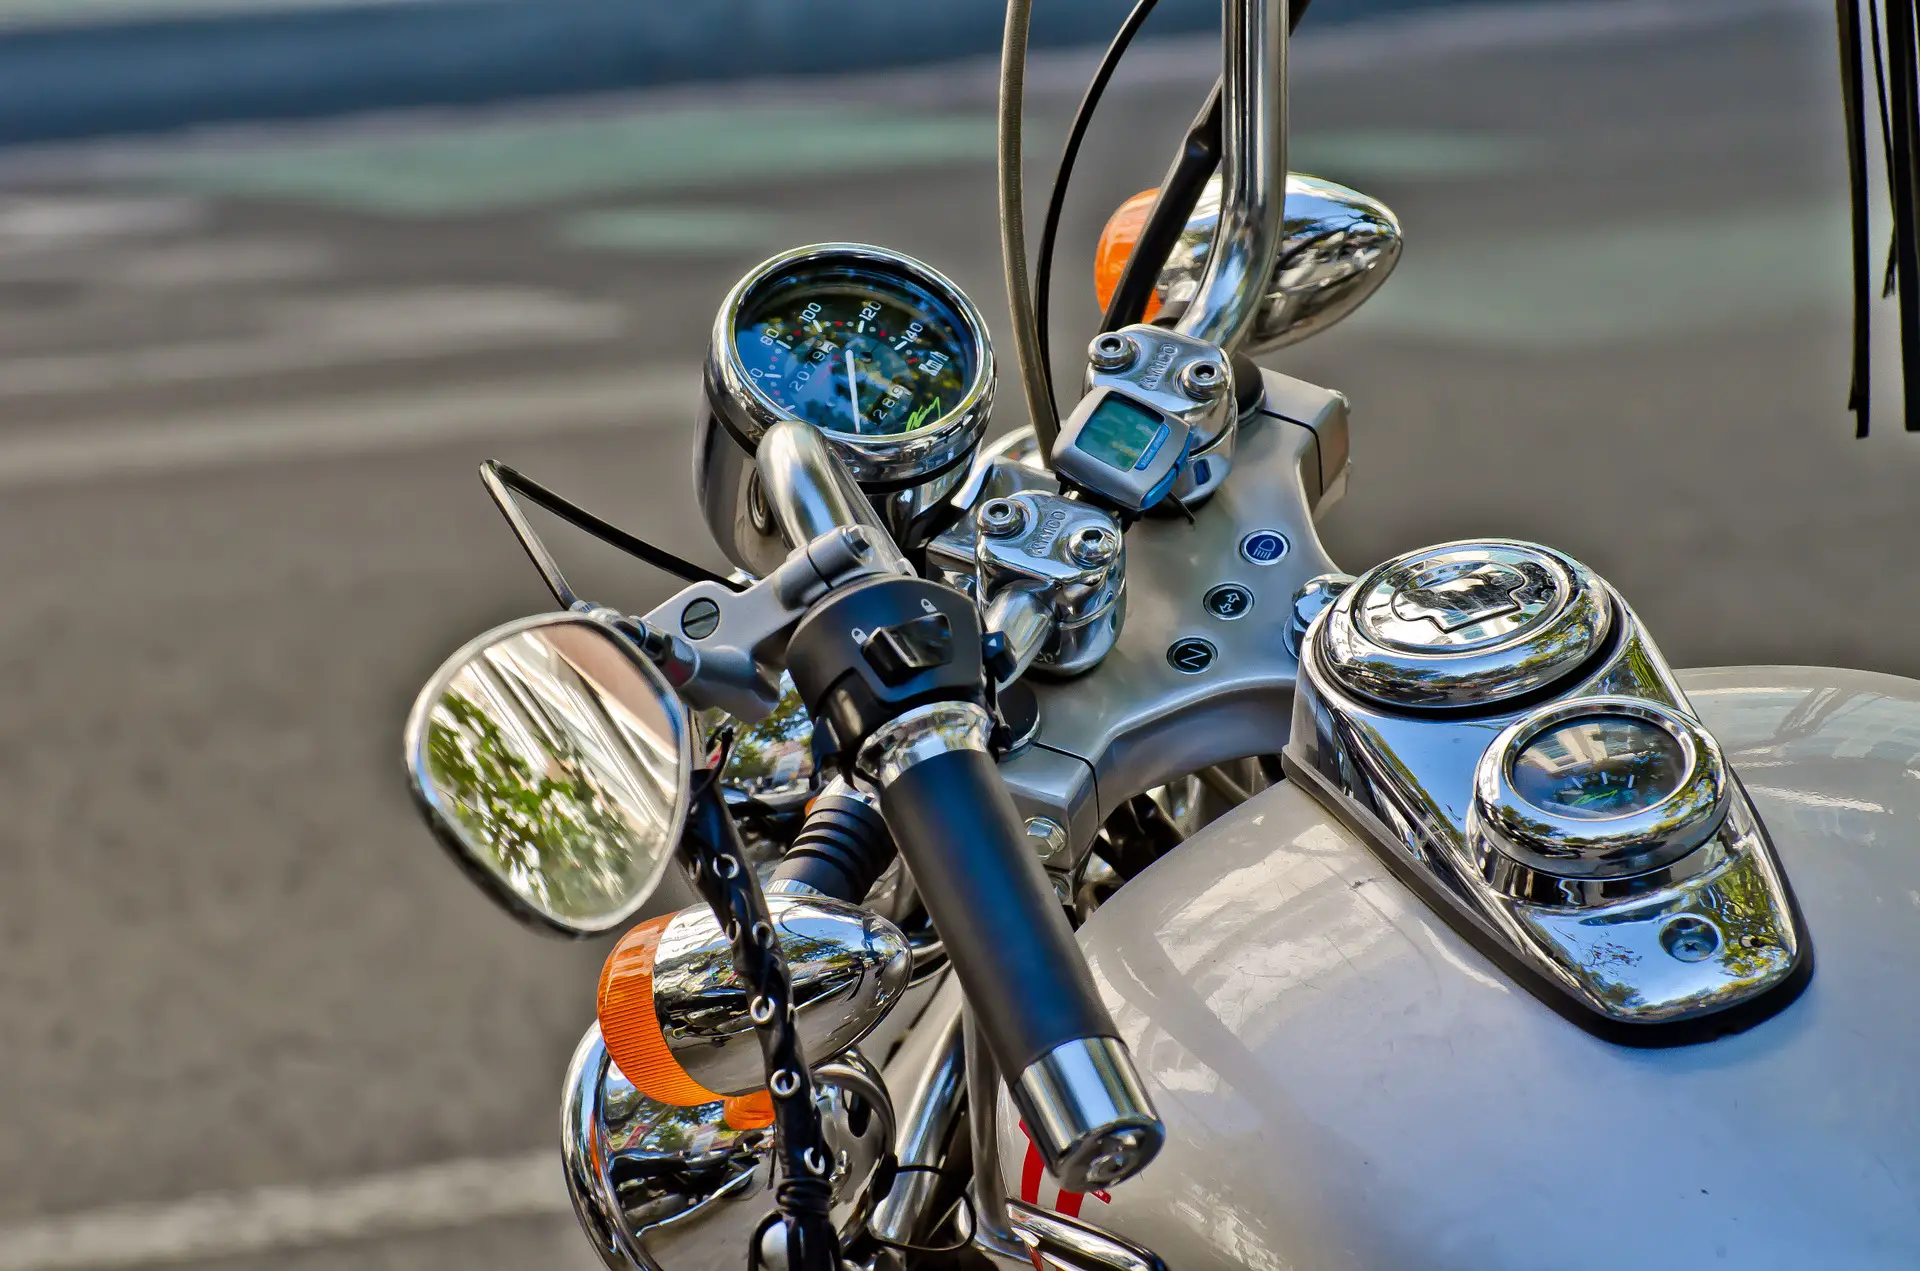 ¿Cómo enderezar el manillar de una motocicleta?